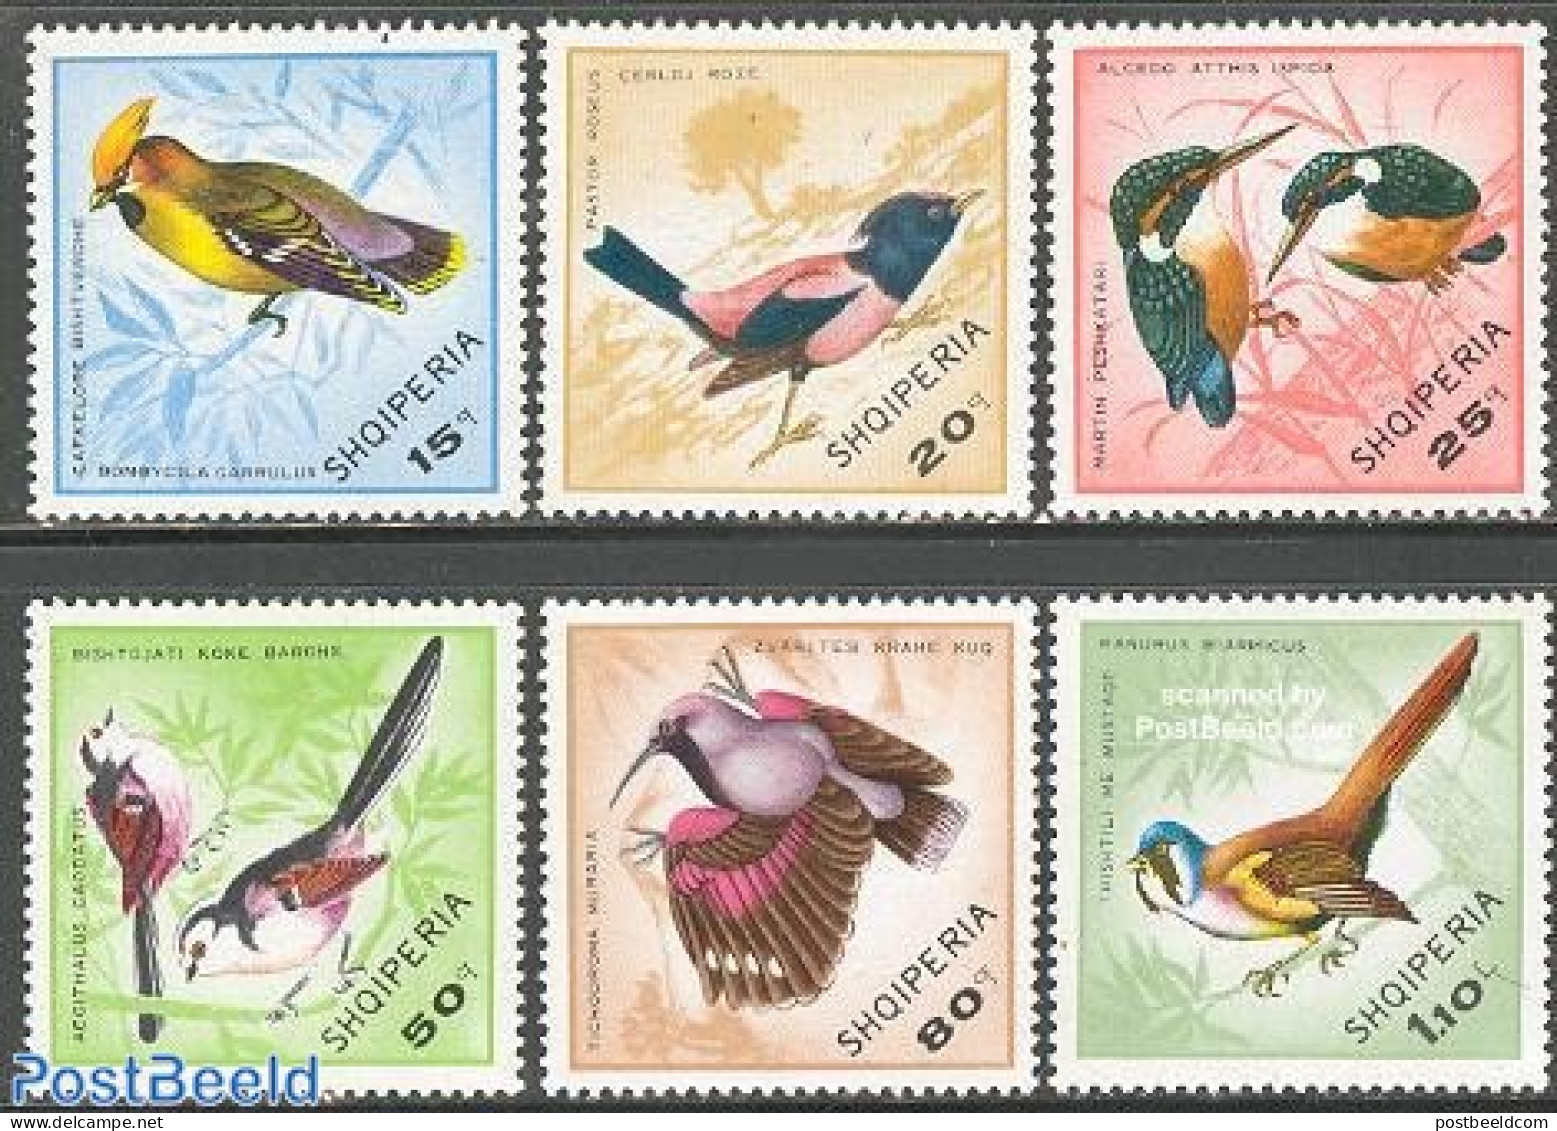 Albania 1968 Birds 6v, Mint NH, Nature - Birds - Kingfishers - Albanie